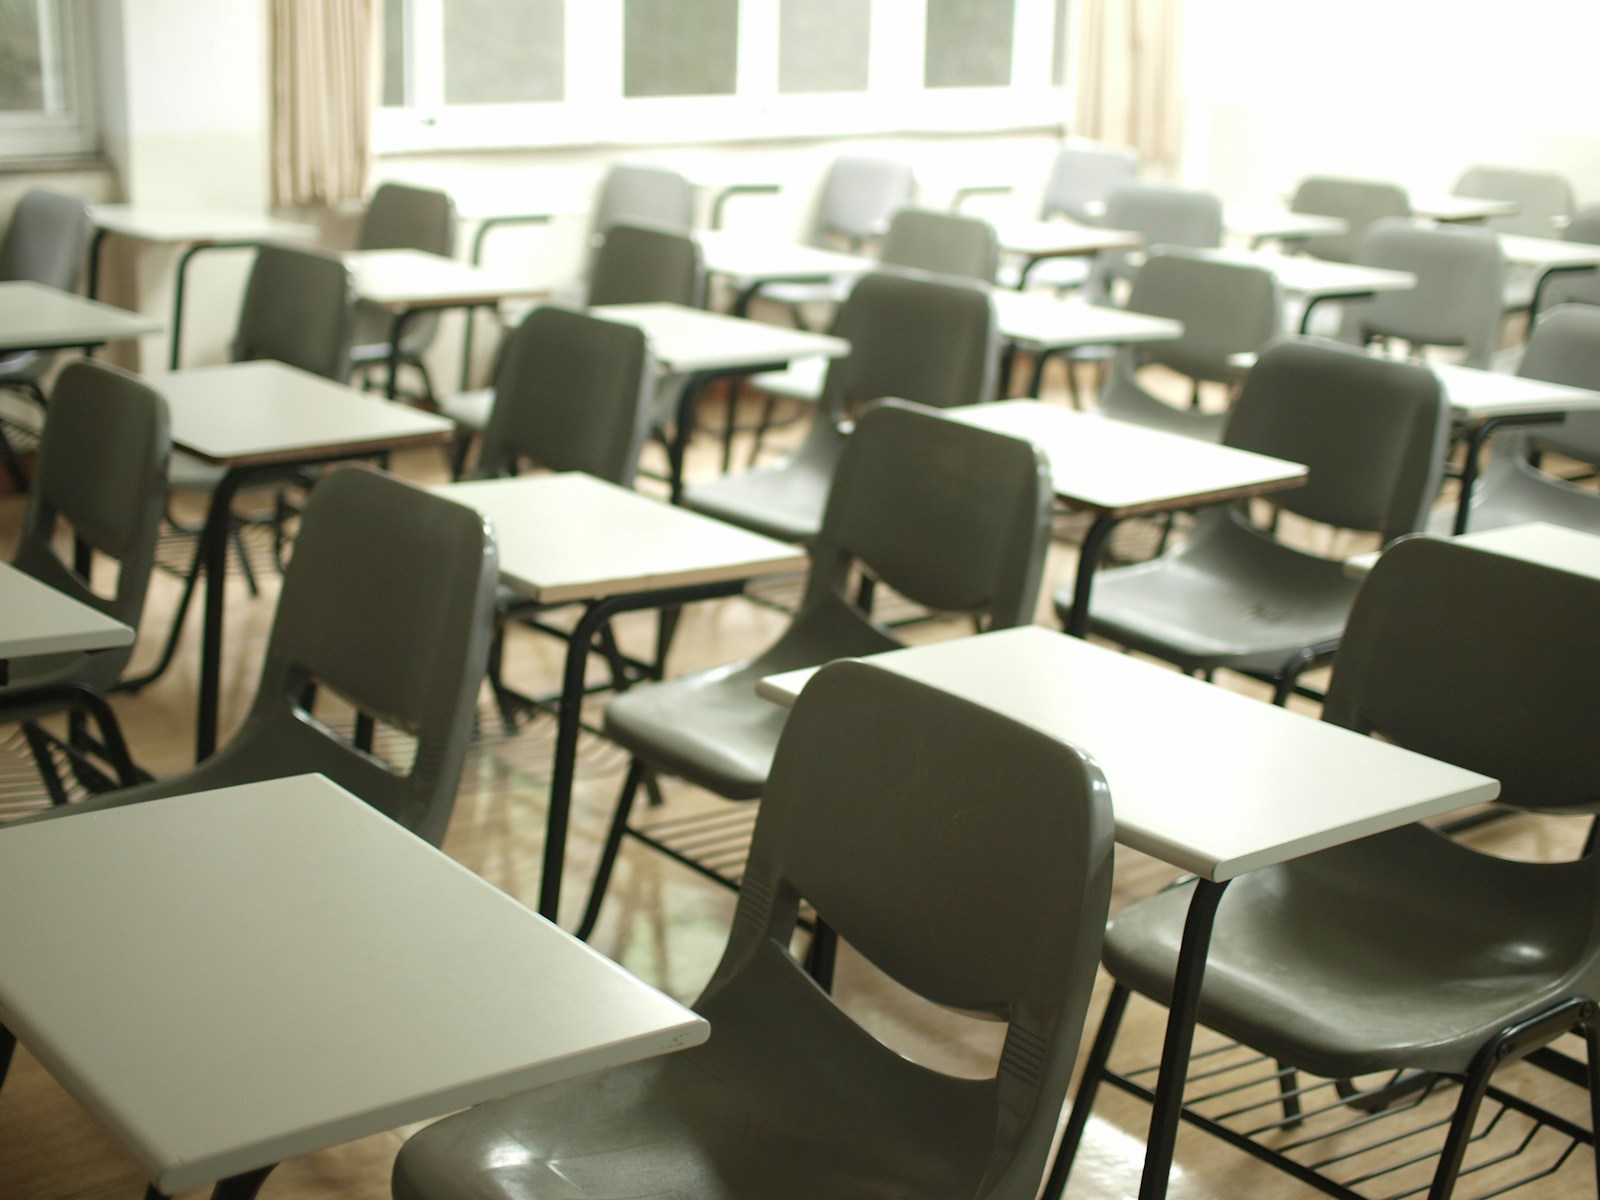 Un'aula con dei banchi e delle sedie disposte in modo ordinato per accogliere gli studenti pronti a sostenere l'esame di maturità